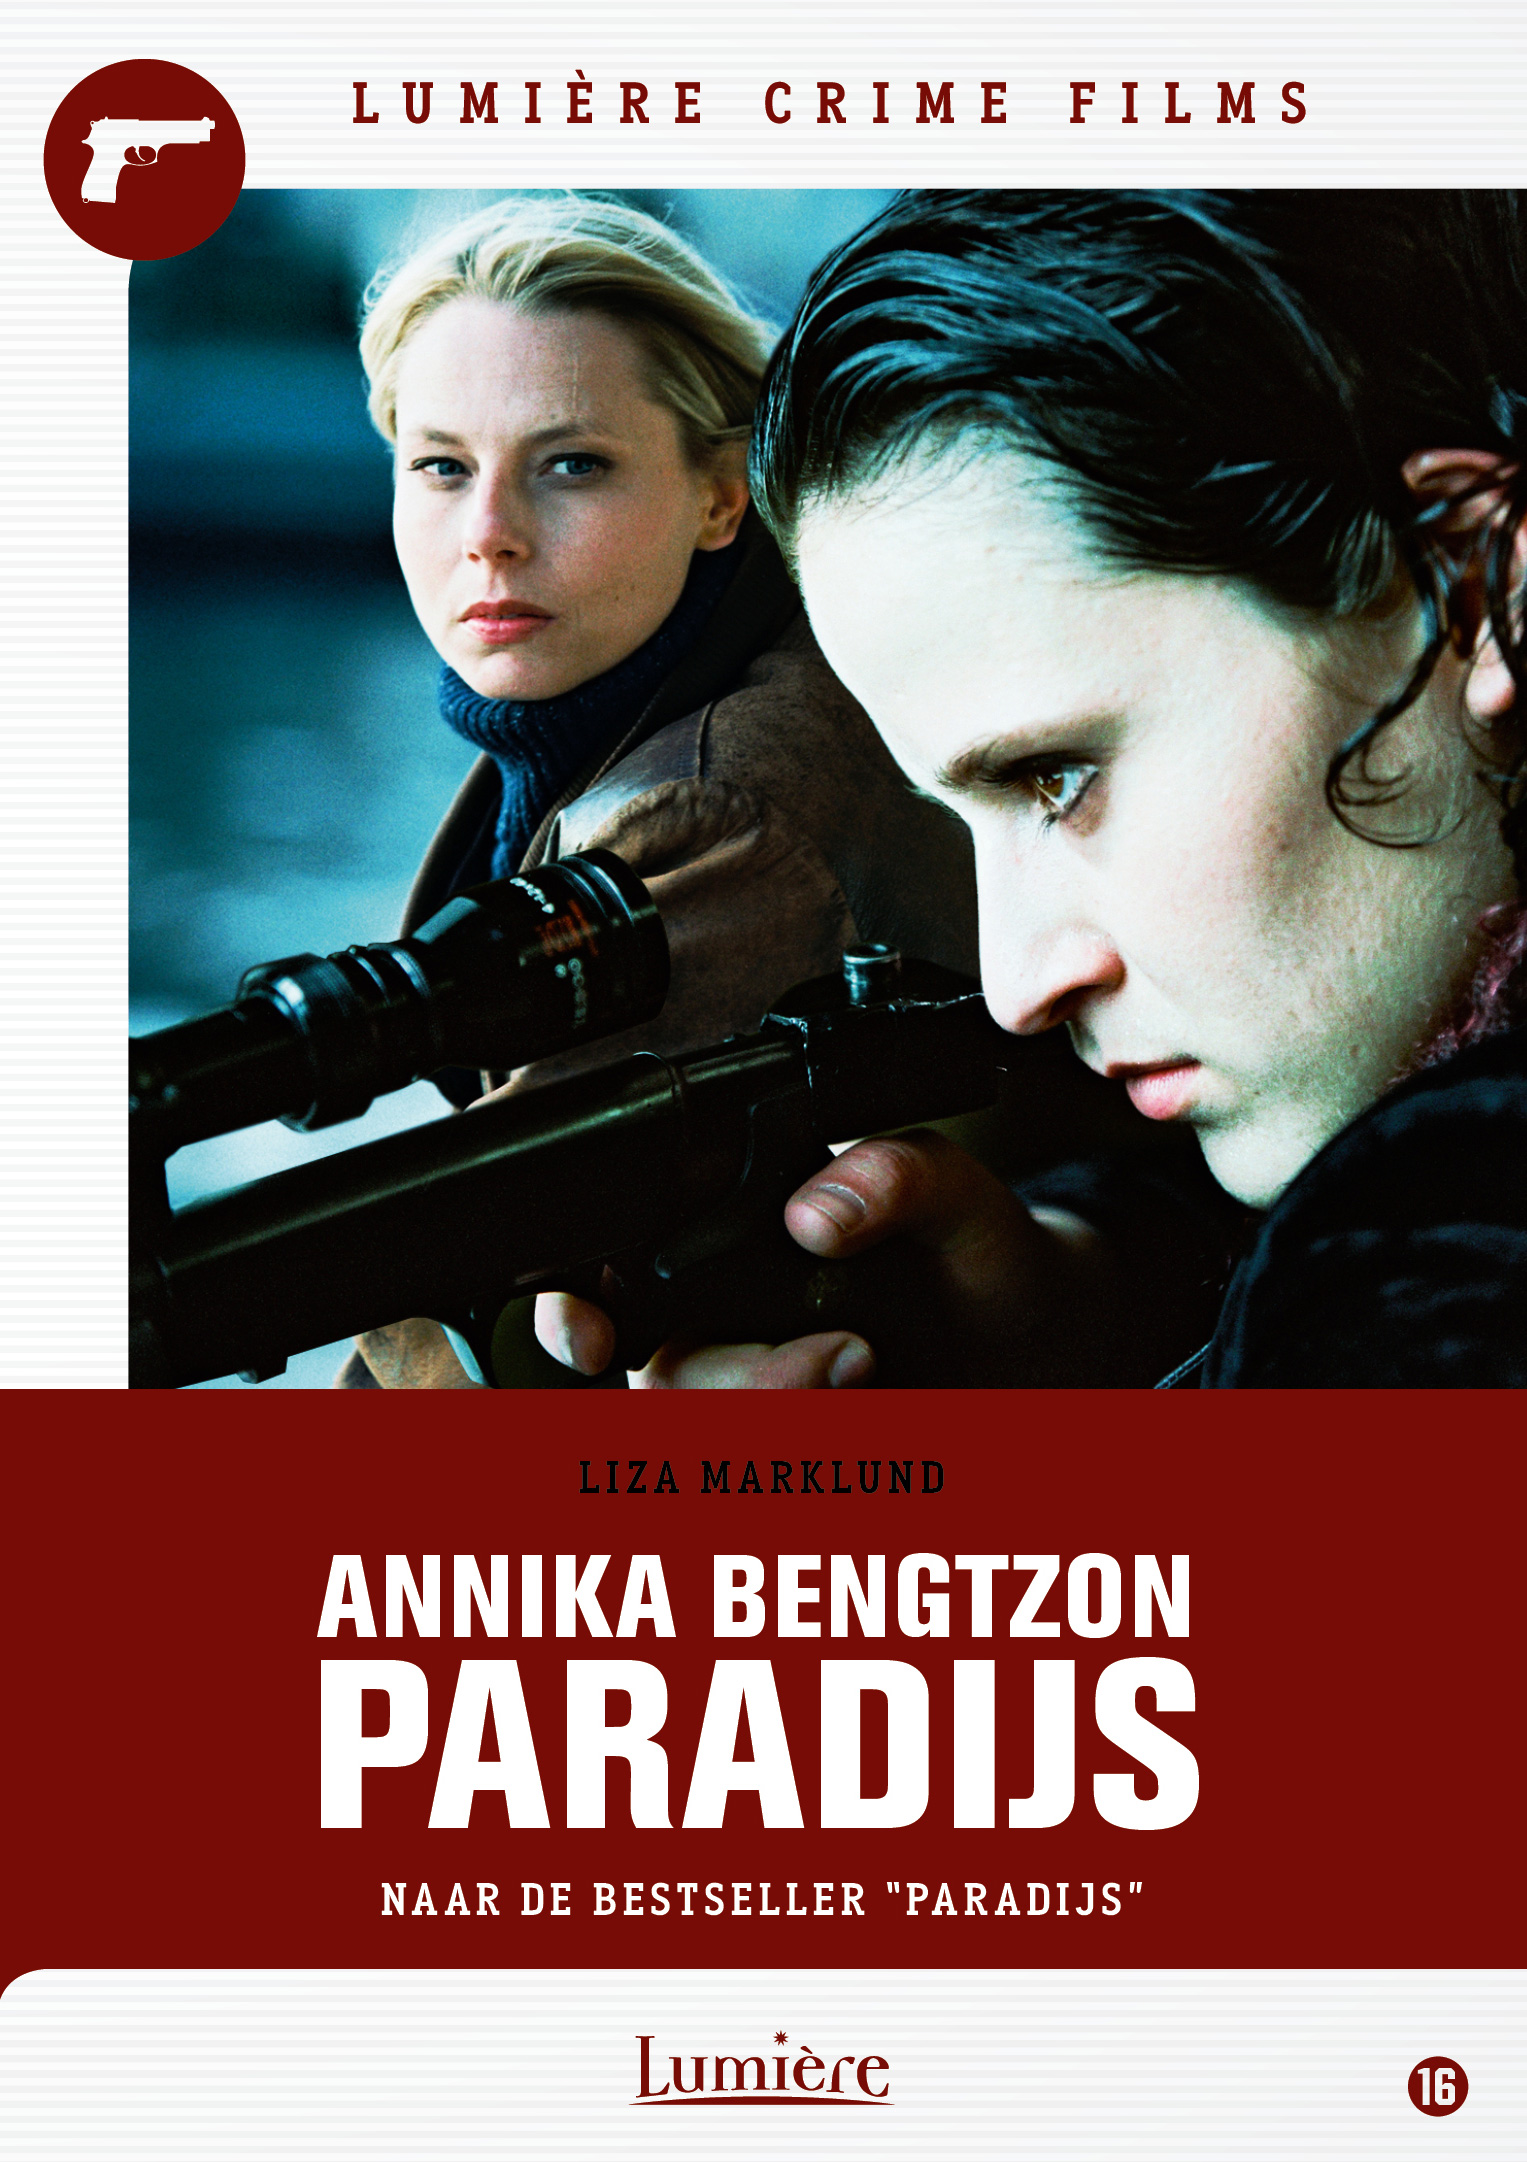 Liza Marklund’s Annika Bengzton – Paradijs